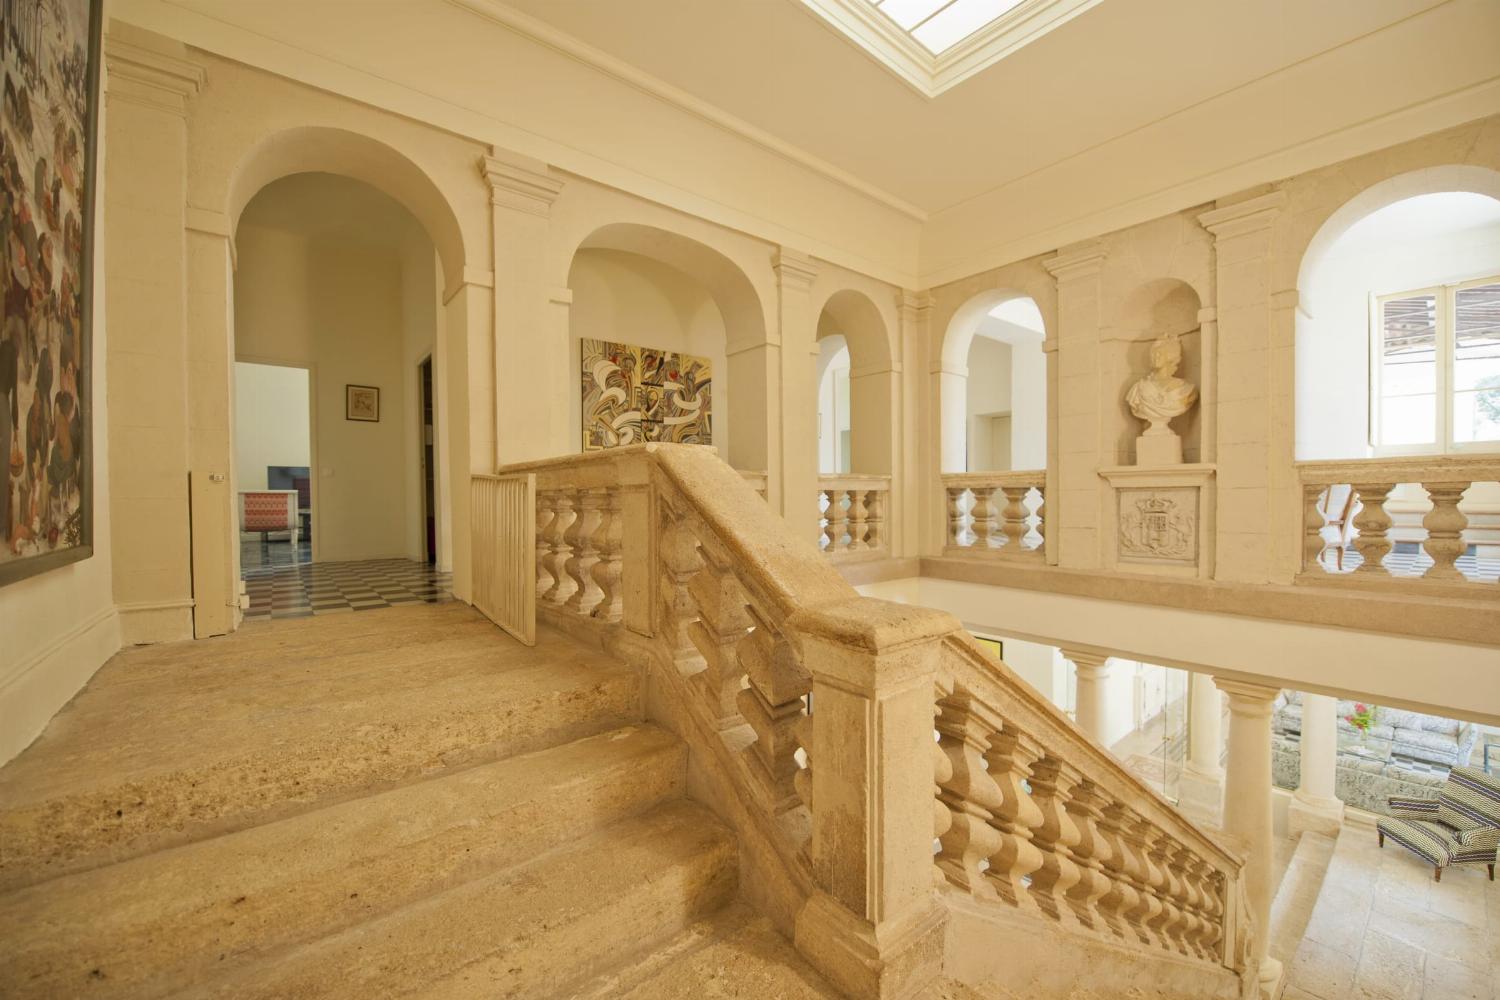 Escalier | Château de vacances dans le sud de la France